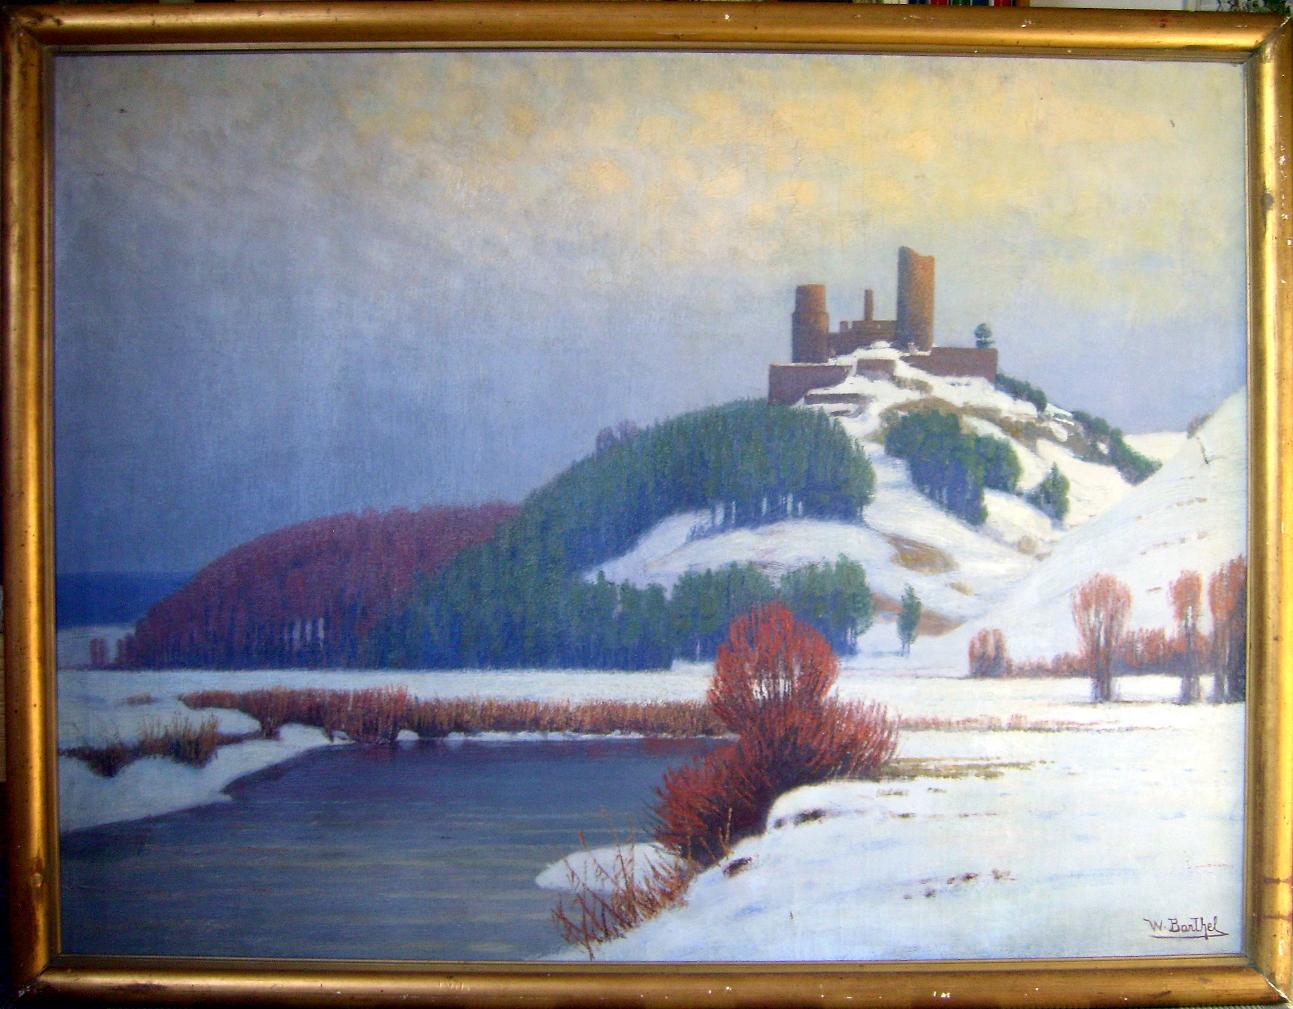 Gesucht: Wo ist diese Burg, Fluss, Landschaft? Wer kennt den Maler: W. Barhel?